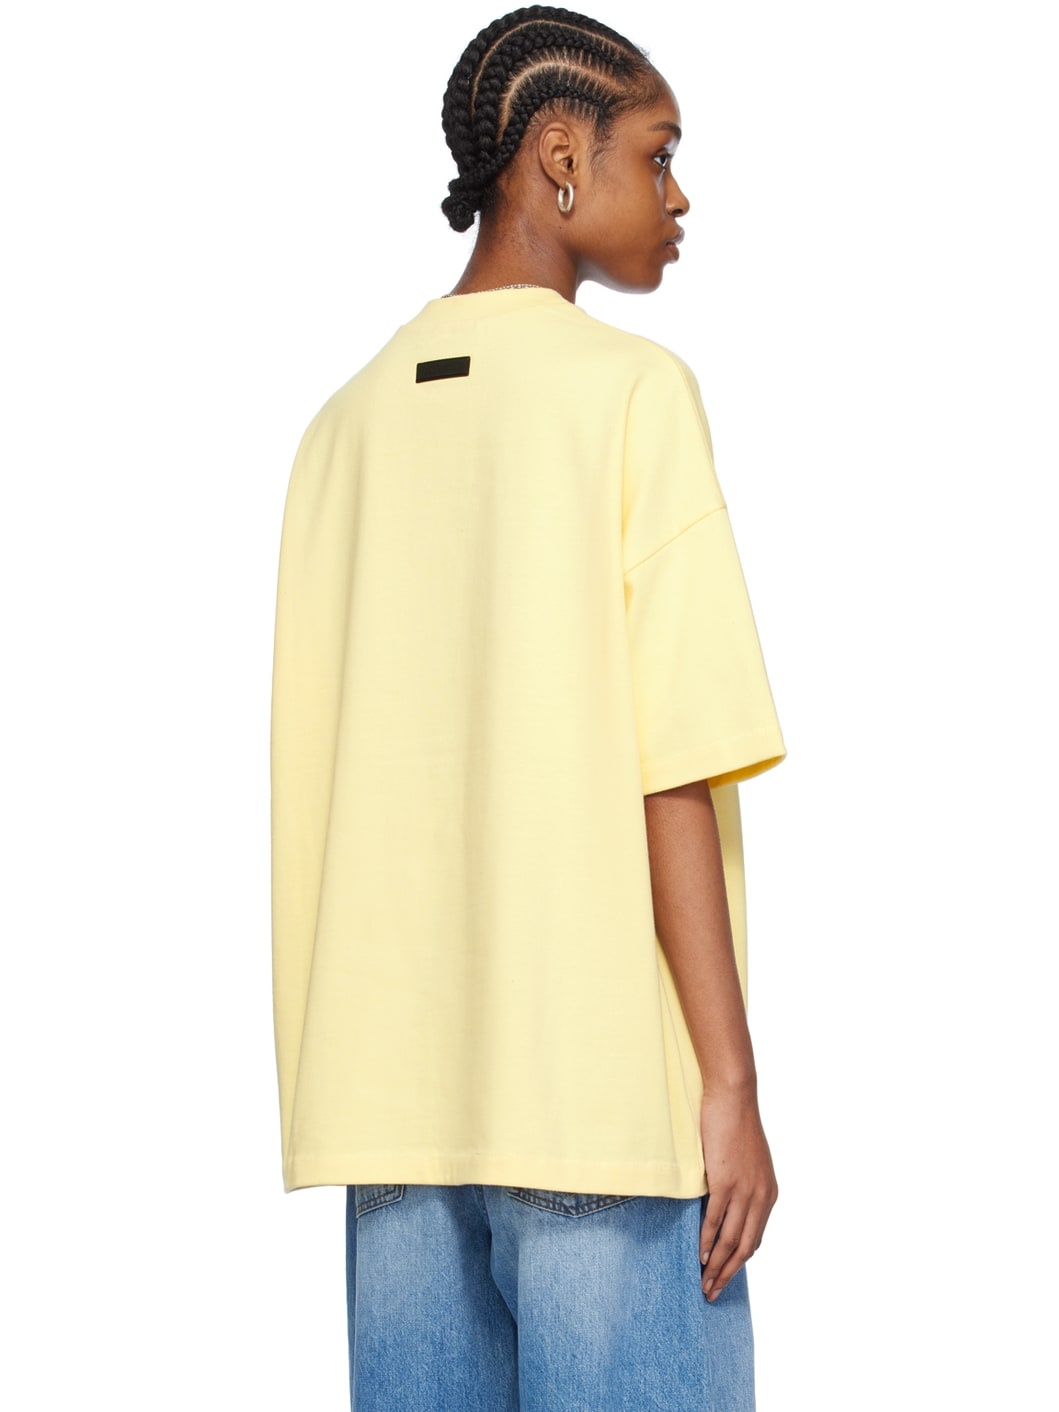 Yellow Crewneck T-Shirt - 3